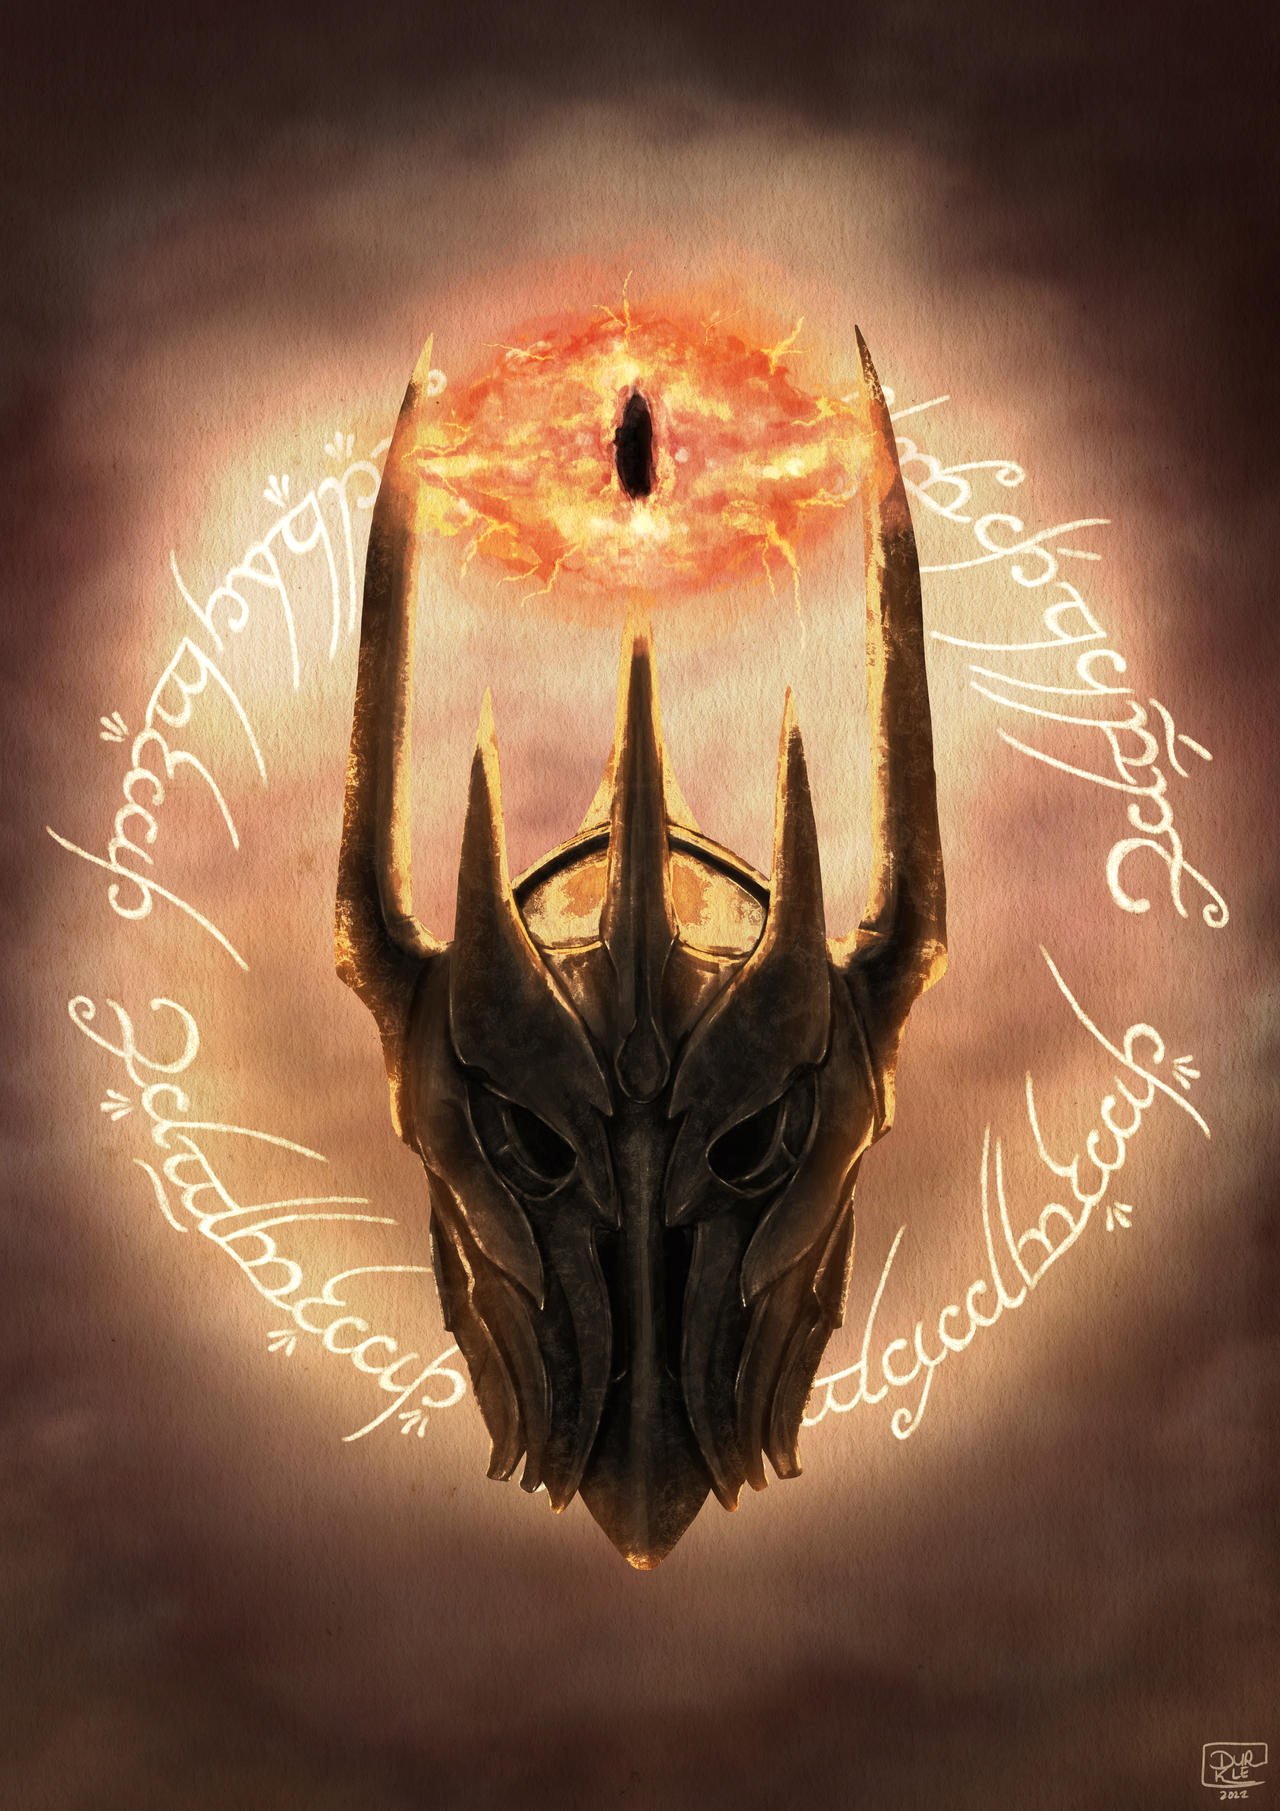 Sauron by Durklee on DeviantArt